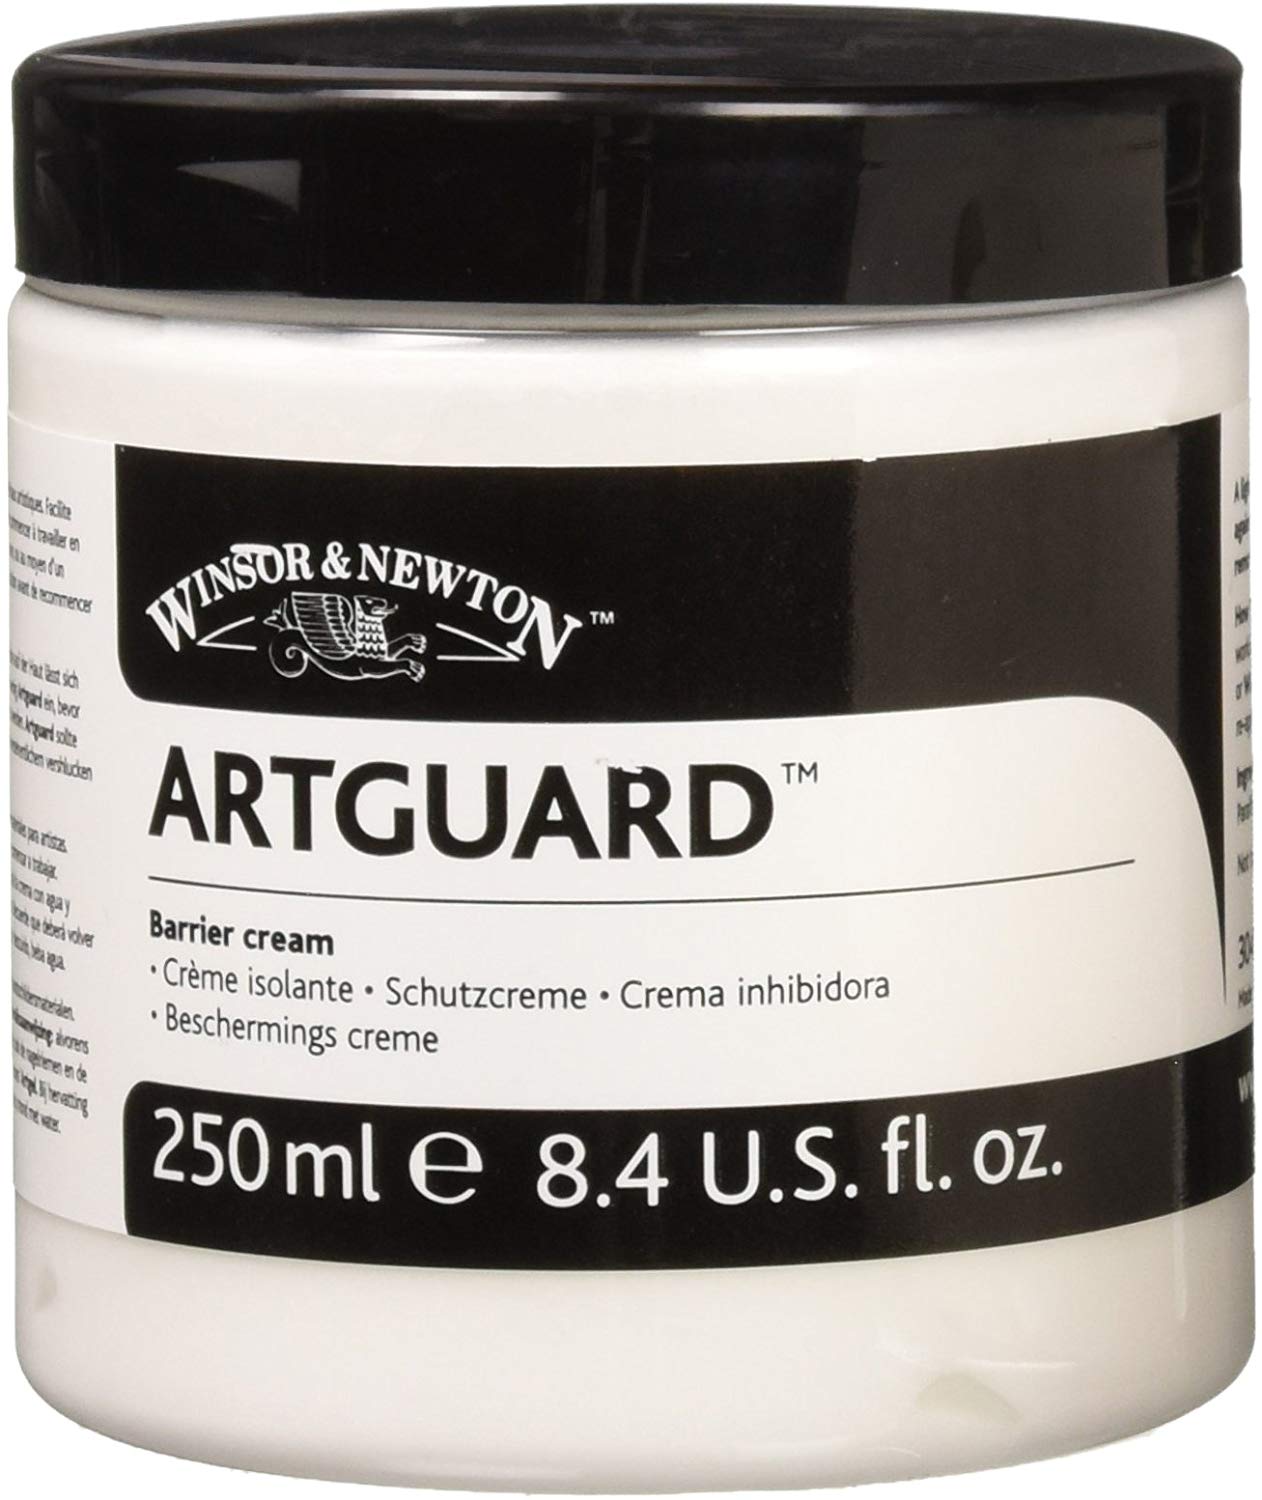 Winsor & Newton Artguard Barrier Cream, 250ml - Wyndham Art Supplies